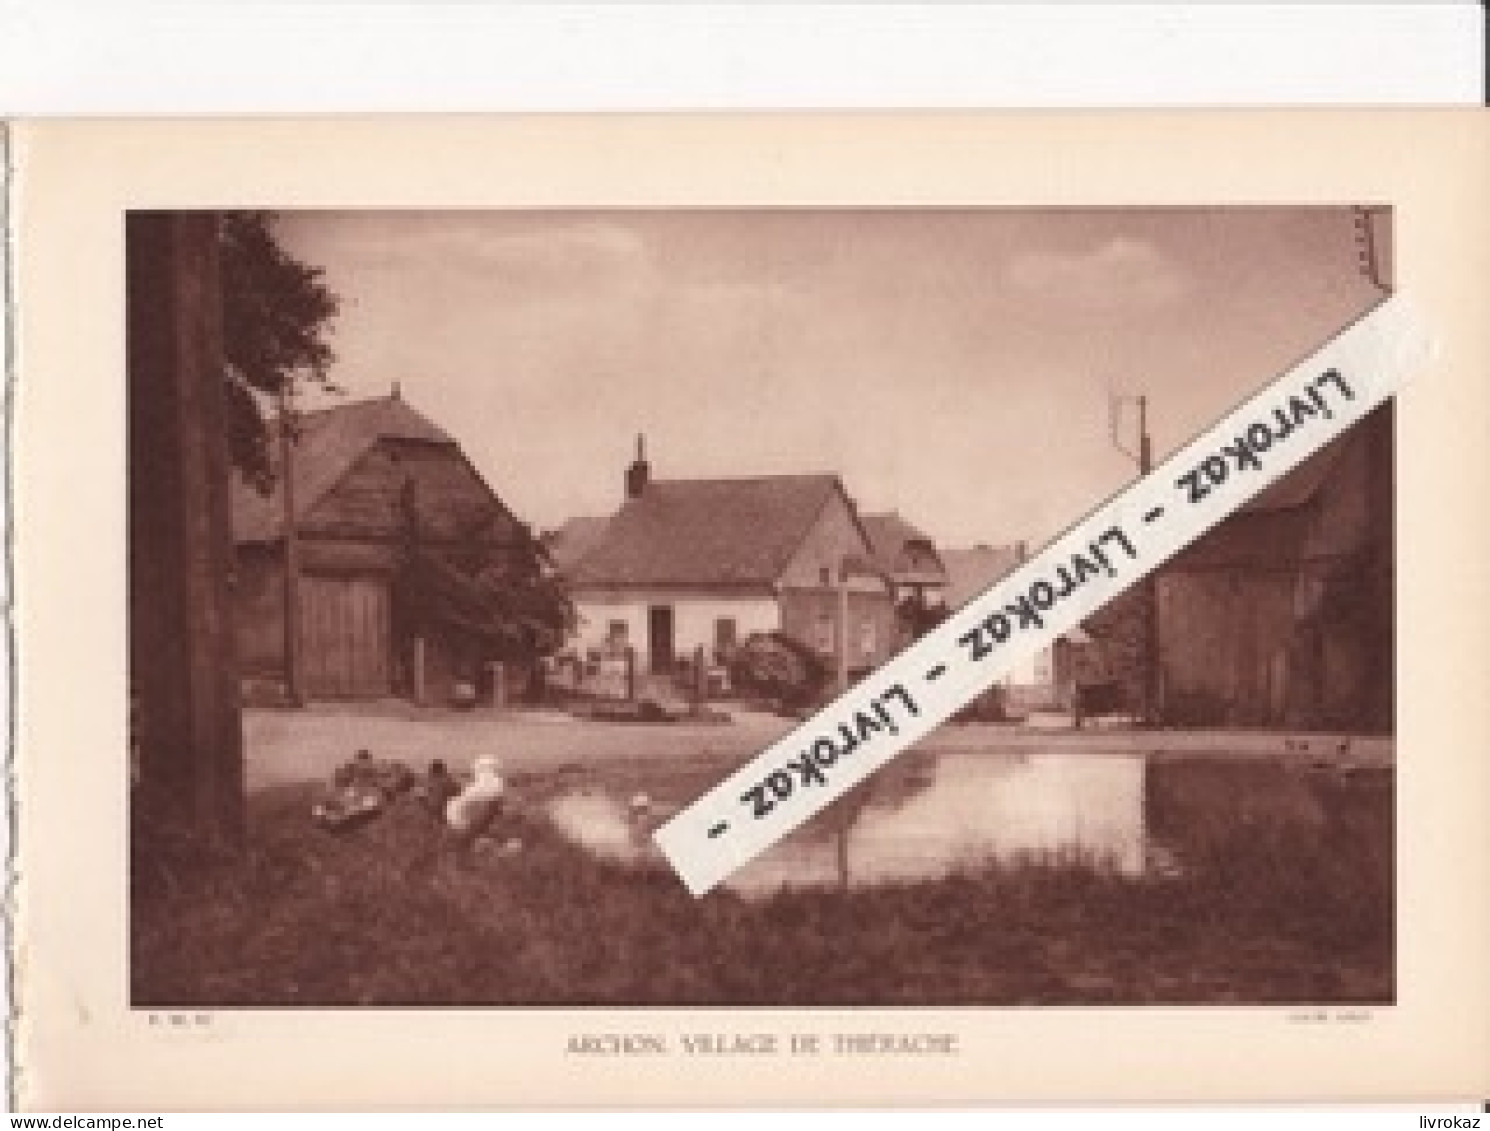 Archon, Village De Thiérache (Aisne), Photo Sépia Extraite D'un Livre Paru En 1933 - Unclassified